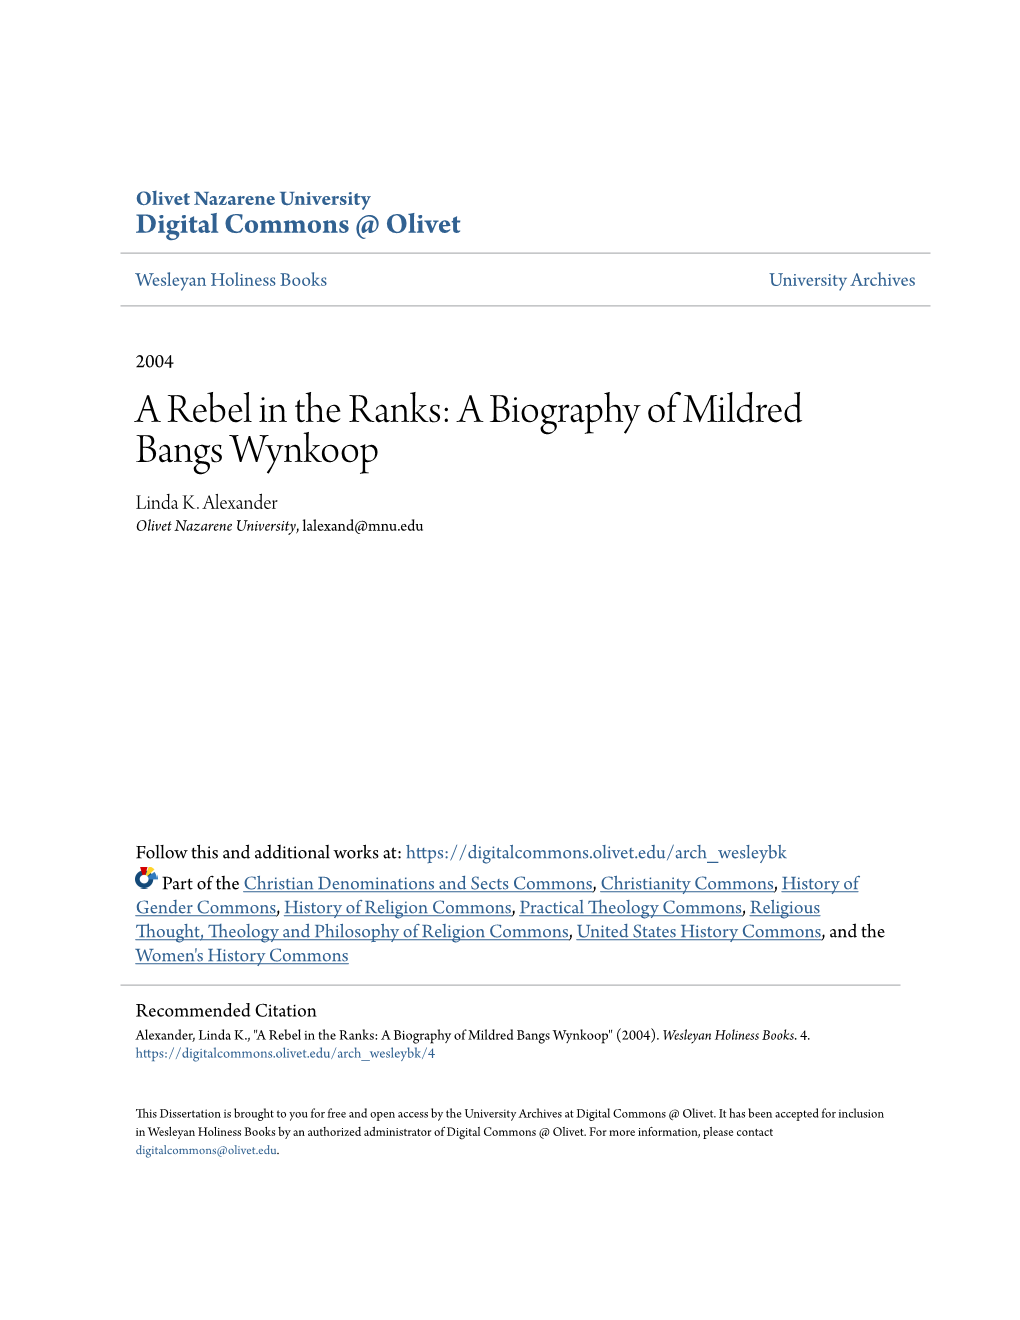 A Biography of Mildred Bangs Wynkoop Linda K